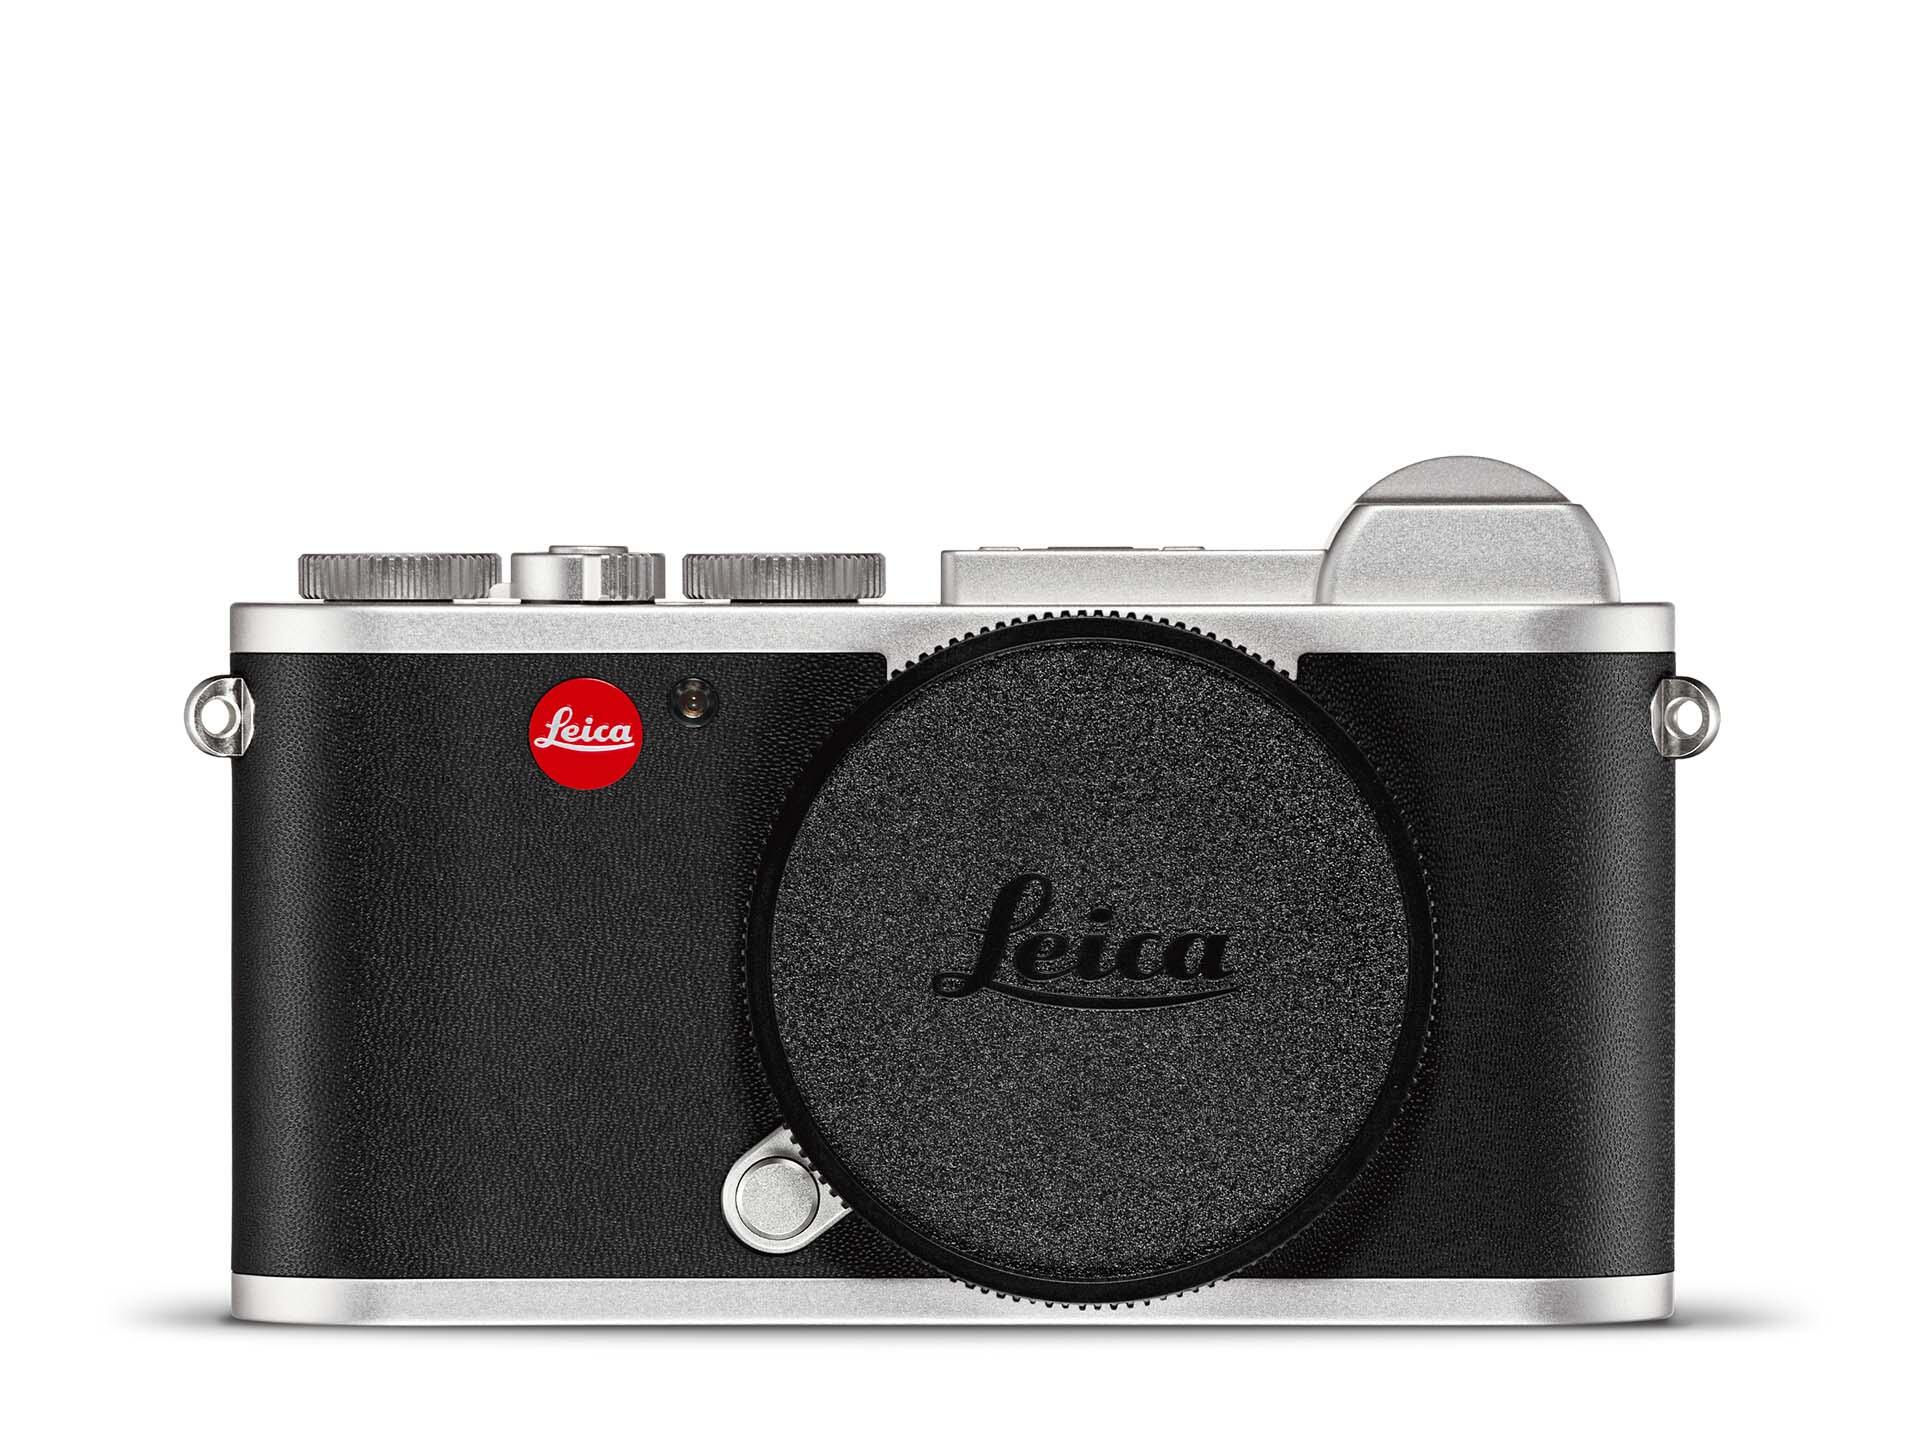 ライカCL : 特長 | Leica Camera JP